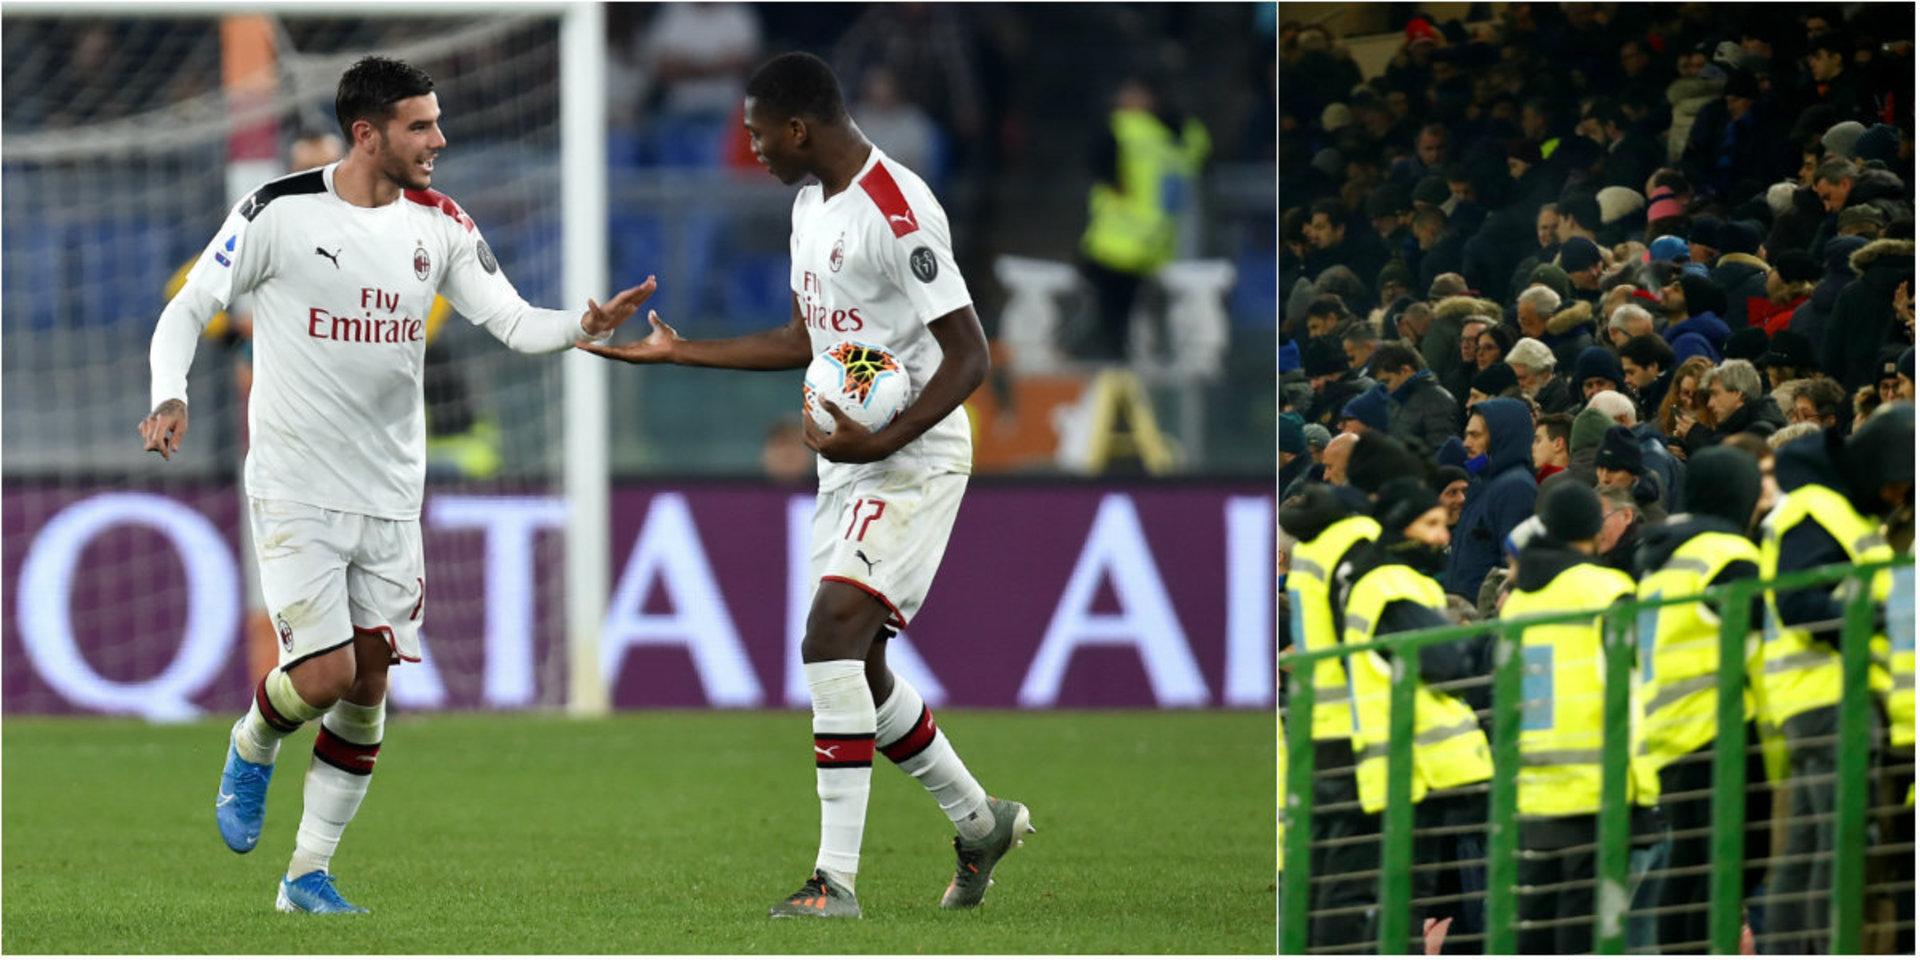 AC Milan firade segern mot Bologna med att kasta upp tröjor på läktaren. Det ska ha slutat med att en person blivit knivhuggen.